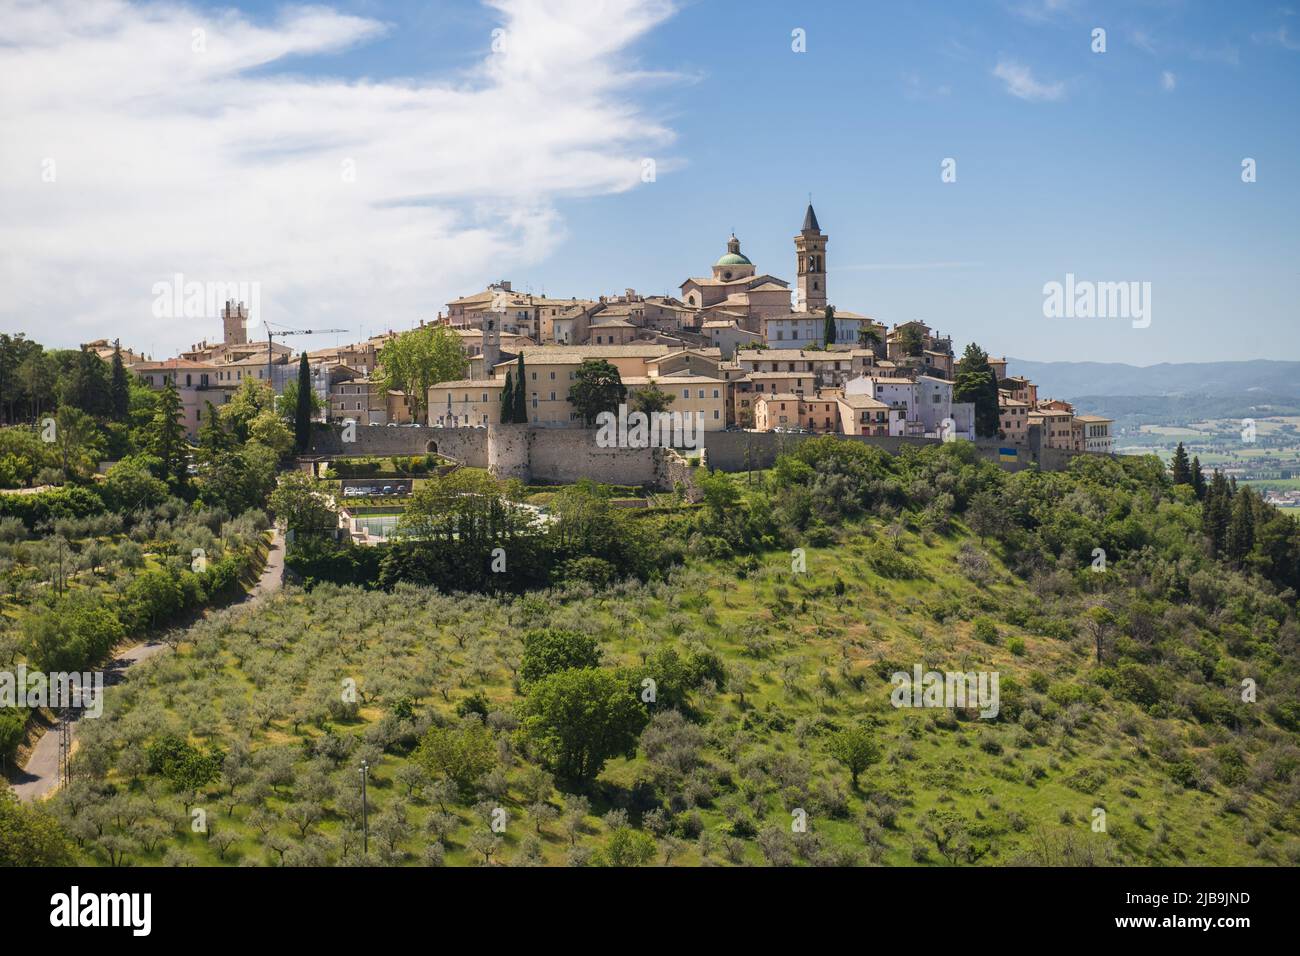 Trevi, Perugia, Umbrien. Italien. Panoramablick auf den Trevi, ein kleines Dorf umgeben von Olivenhainen in der umbrischen Landschaft Stockfoto